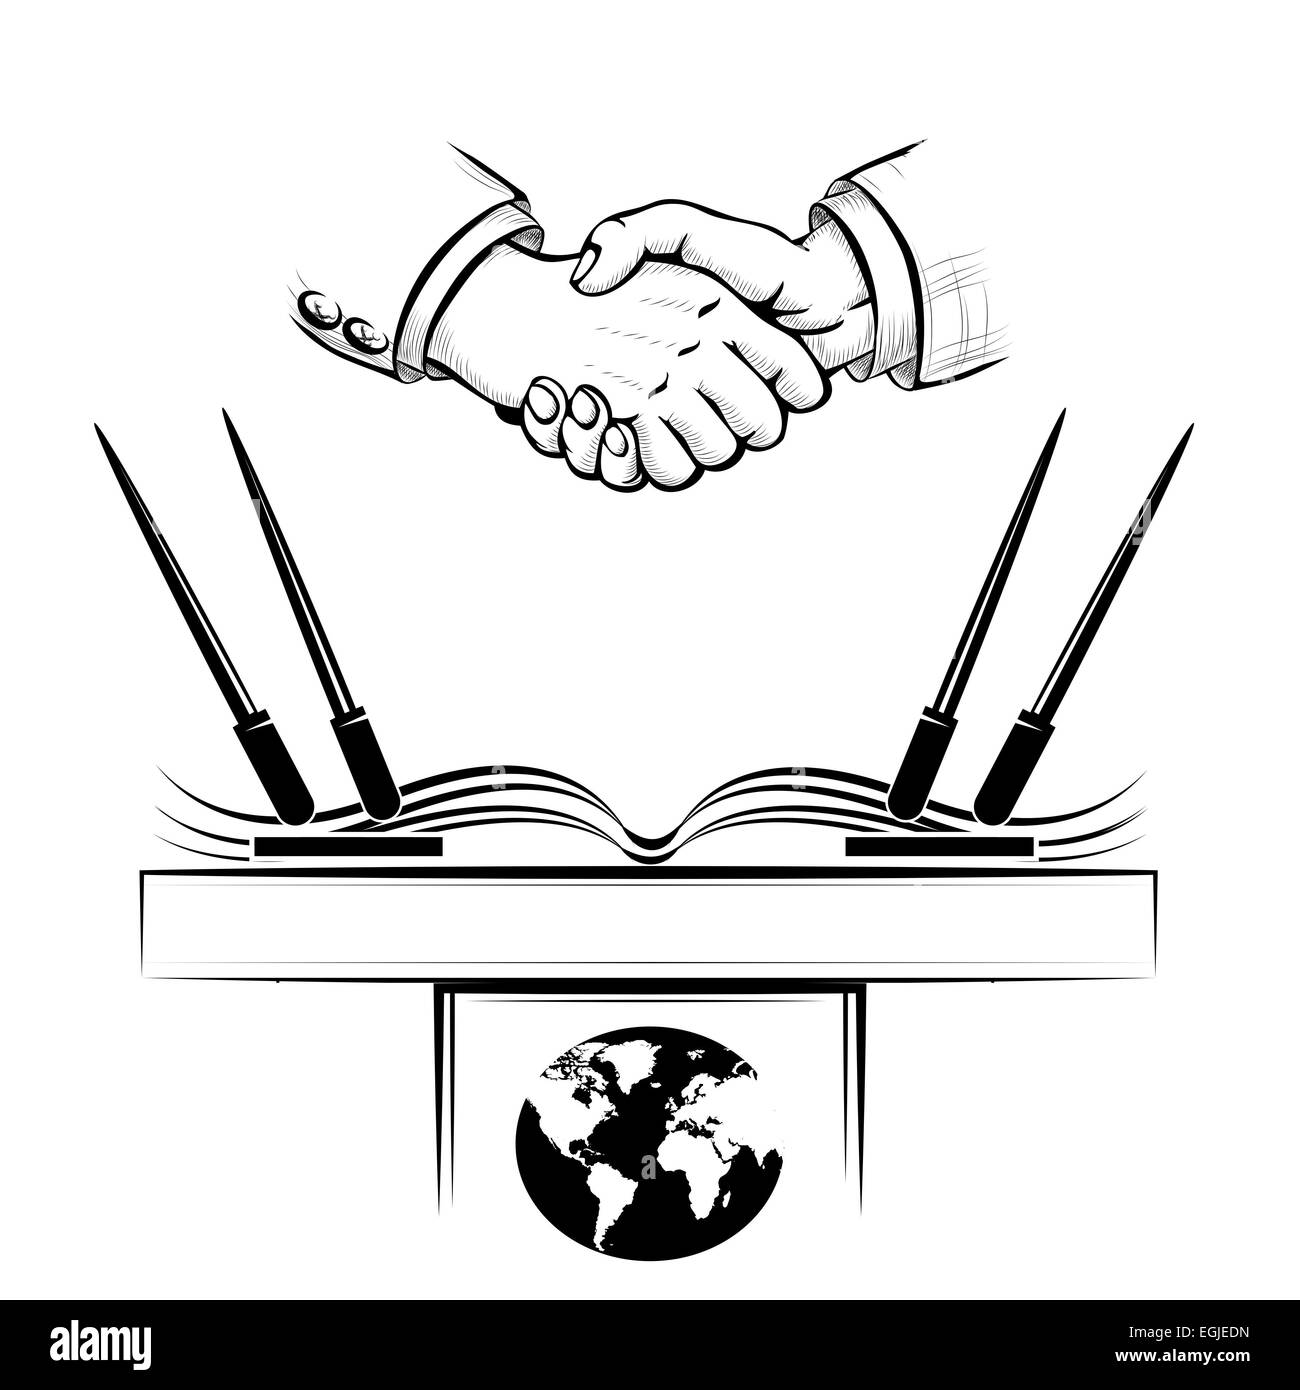 Handshake über politische oder wirtschaftliche Vereinbarung. Isoliert auf weißem Hintergrund. Stockfoto